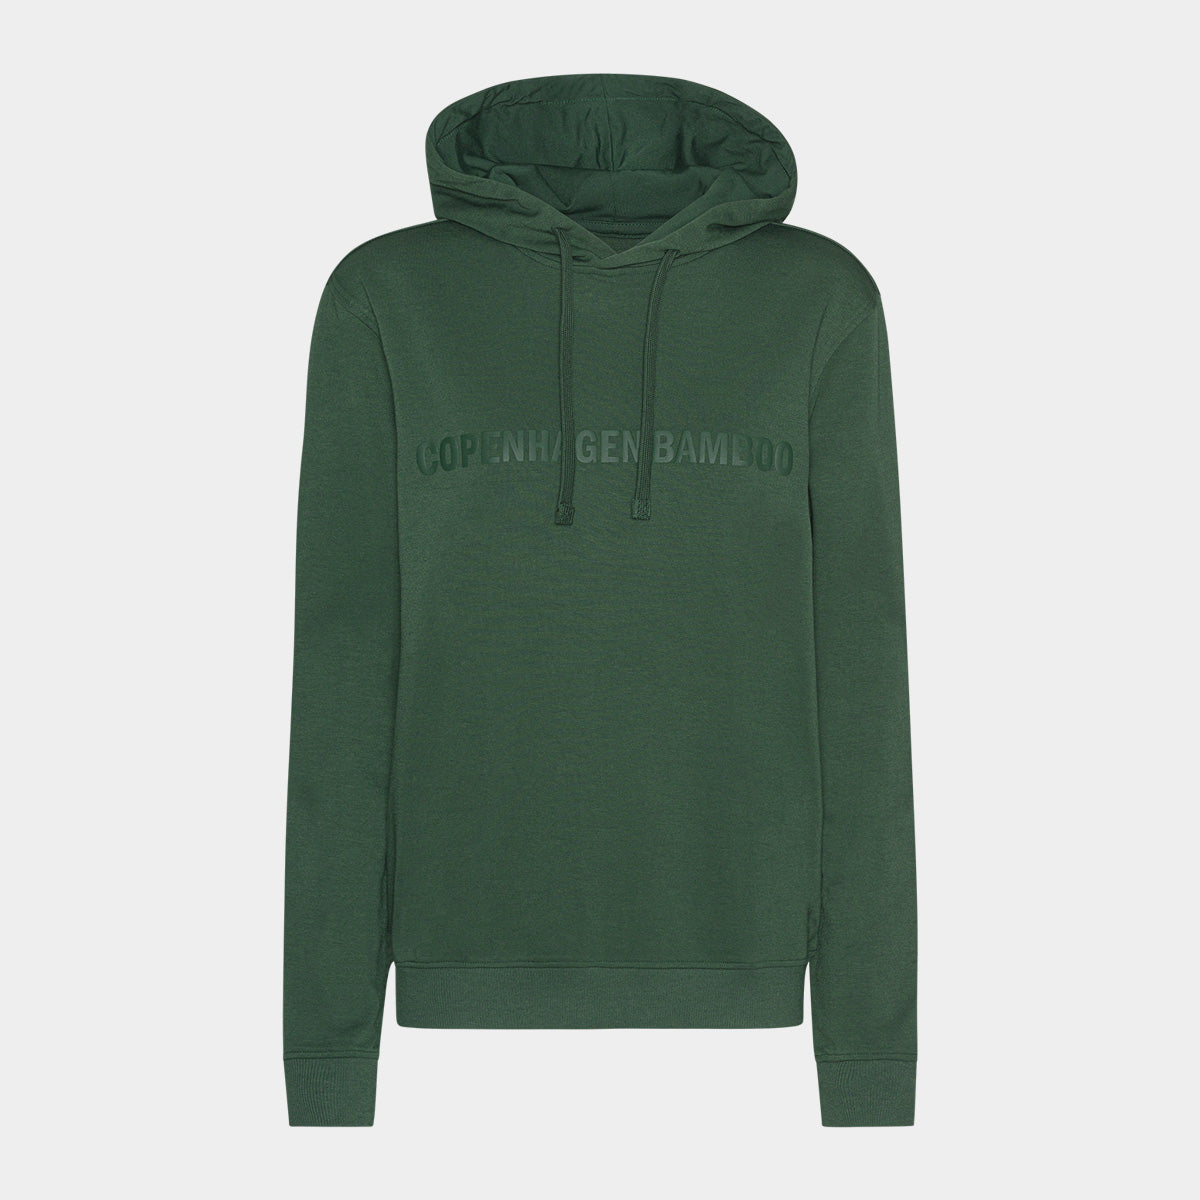 Se Grøn bambus hoodie til dame med logo fra Copenhagen Bamboo, XL hos Bambustøj.dk